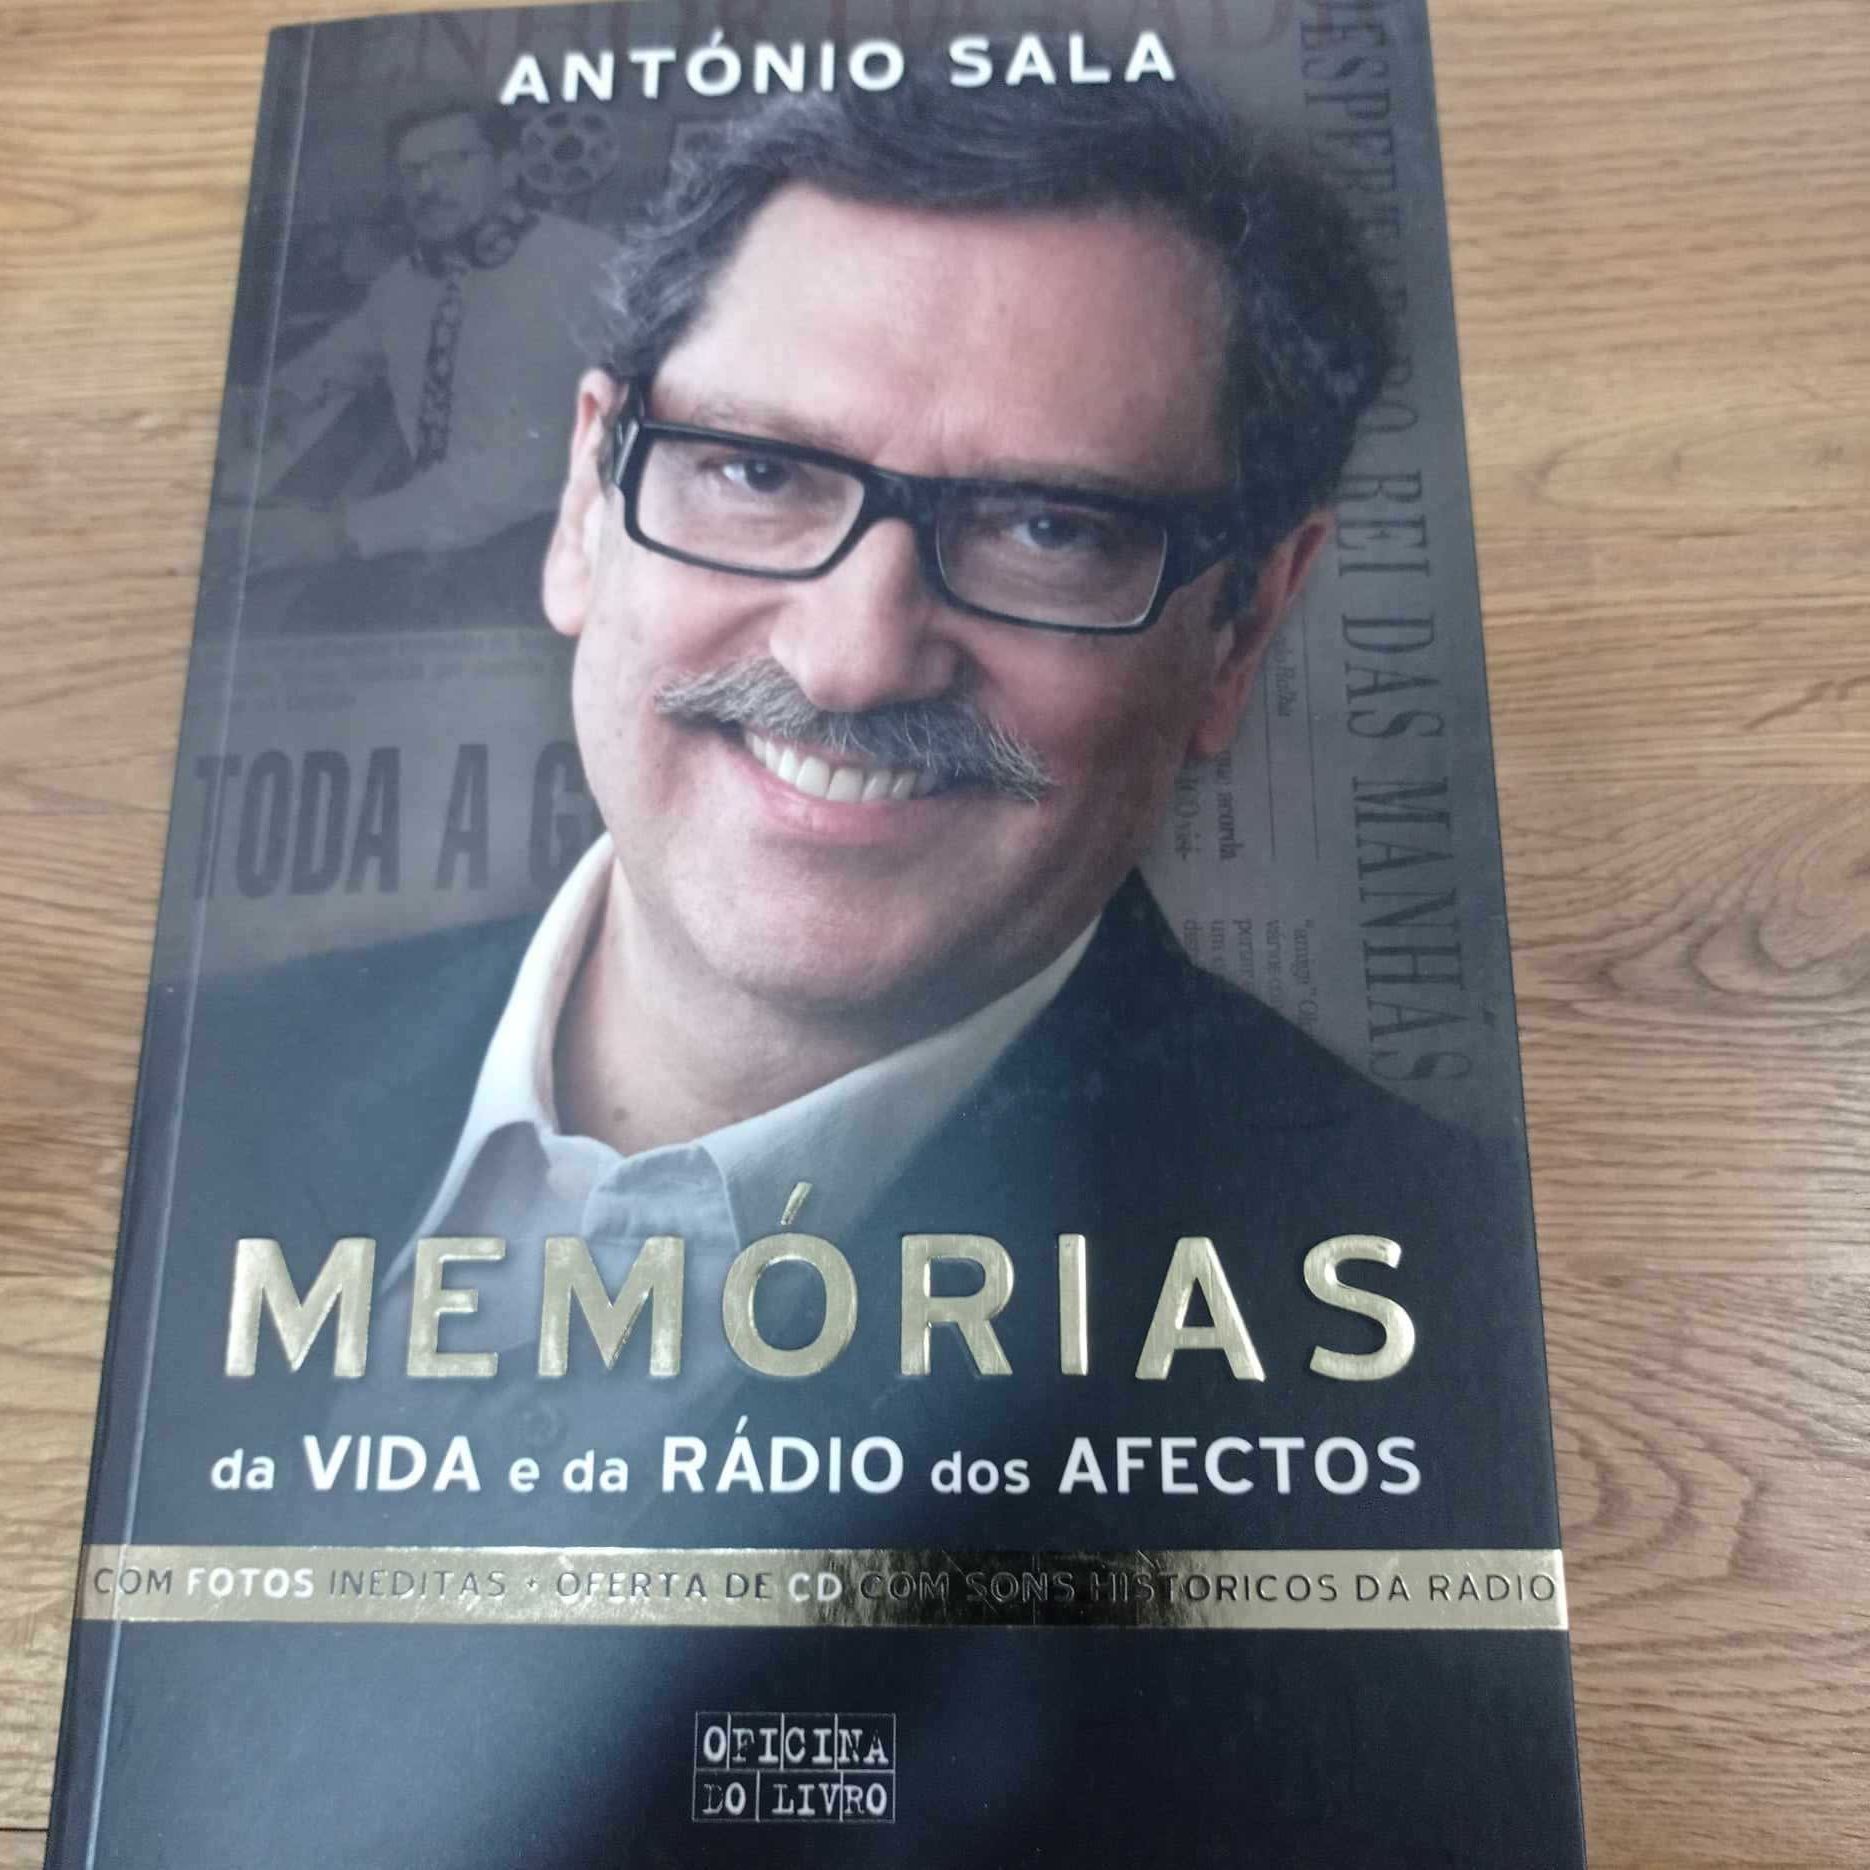 vendo livro António sala memorias da vida e da radio dos afetos + CD